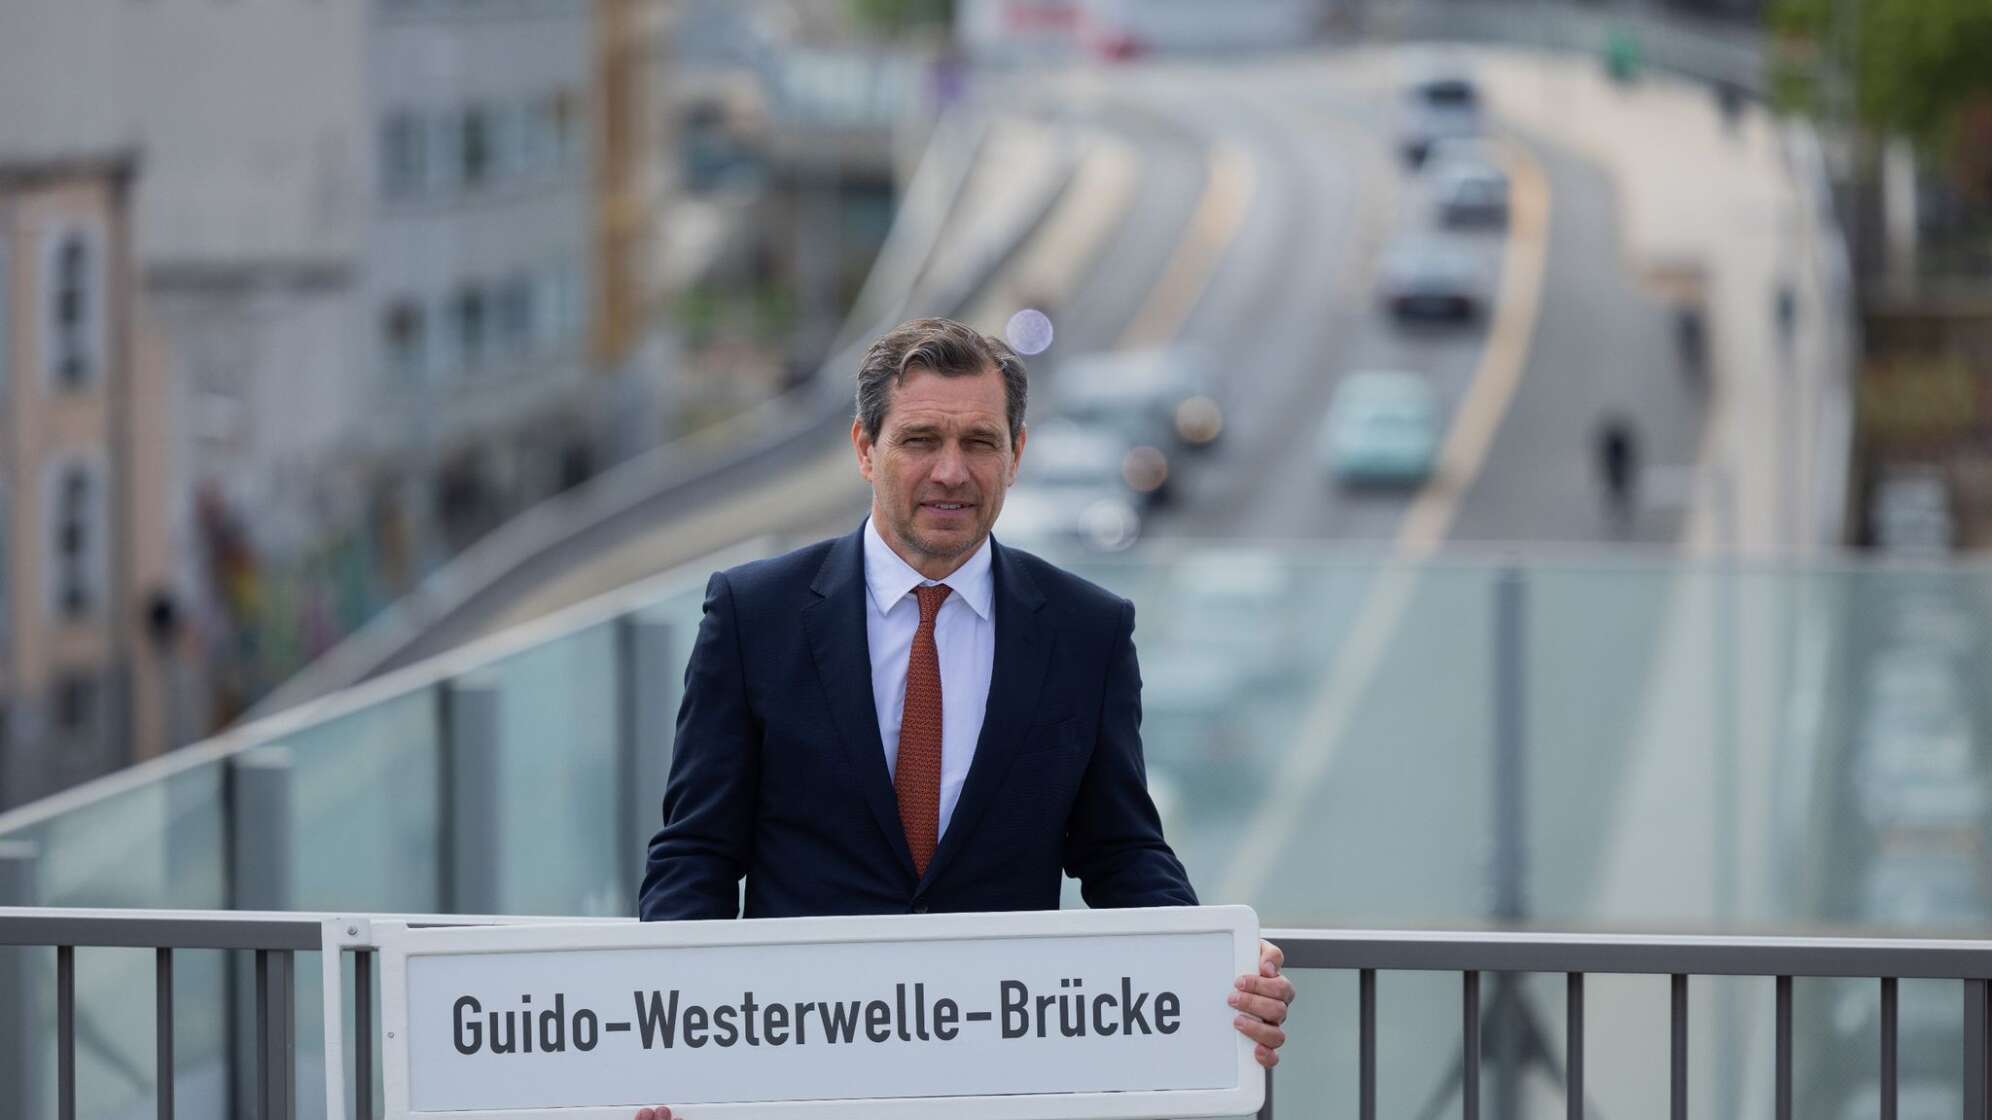 Bonner Victoriabrücke wird zur Guido-Westerwelle-Brücke